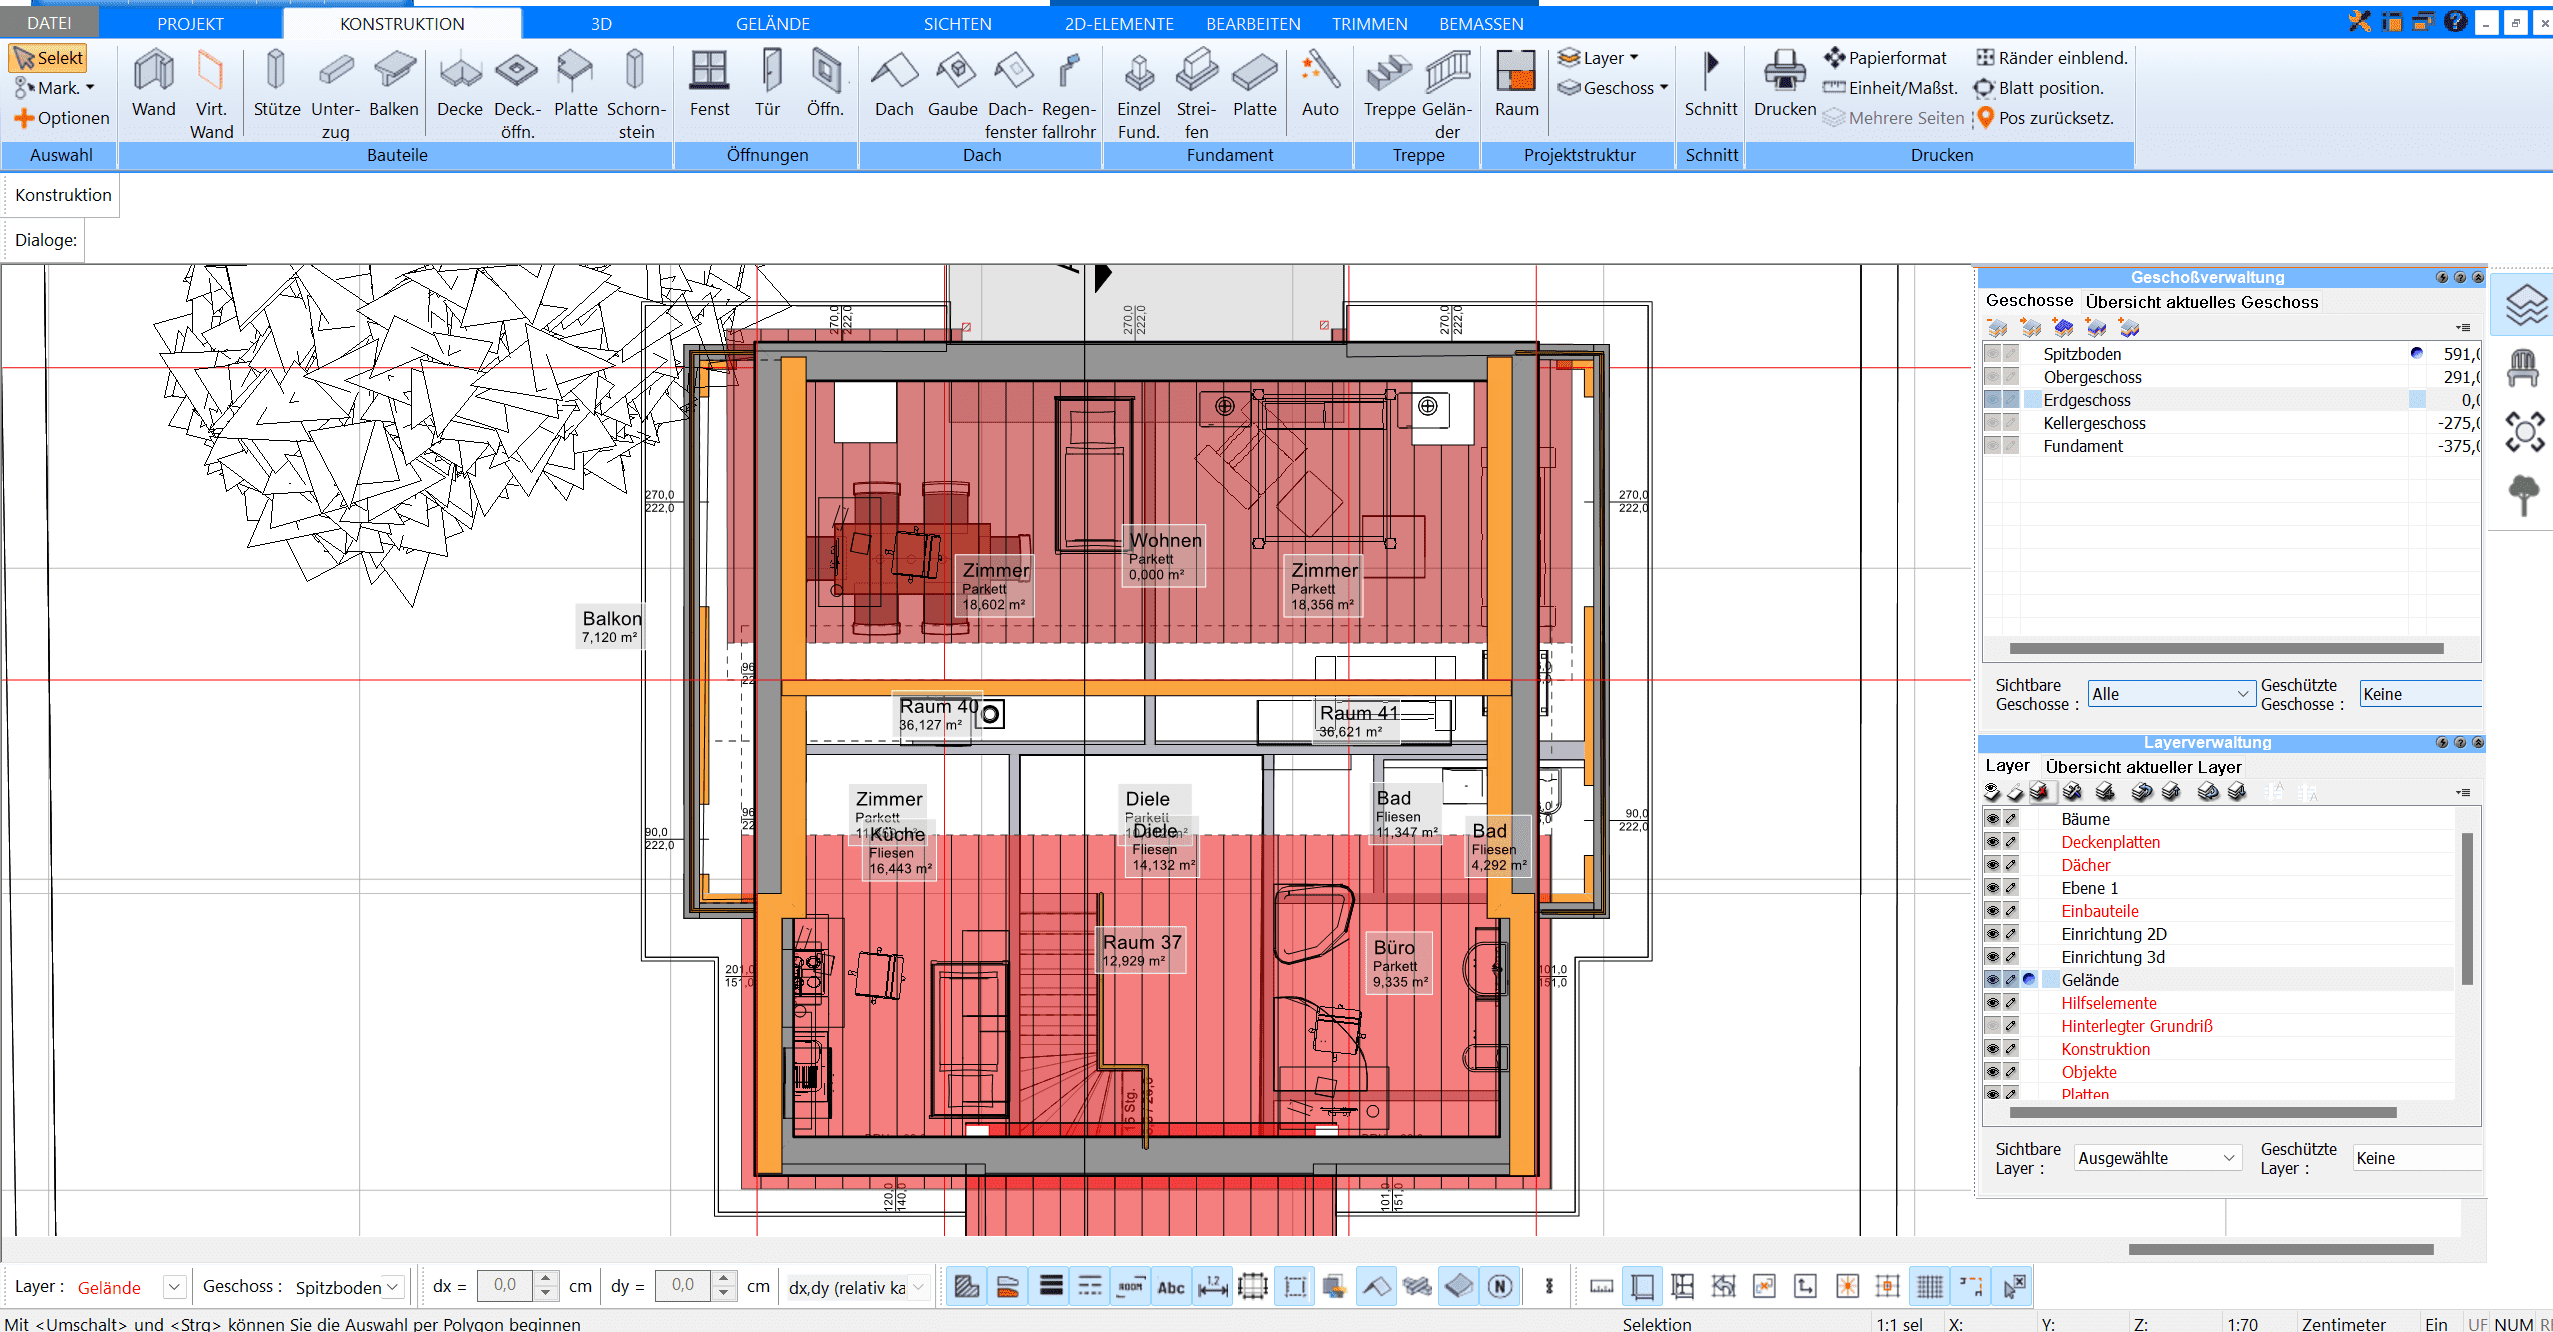 Dachschrägen werden im Plan7Architekt automatisch berechnet und gezeichnet